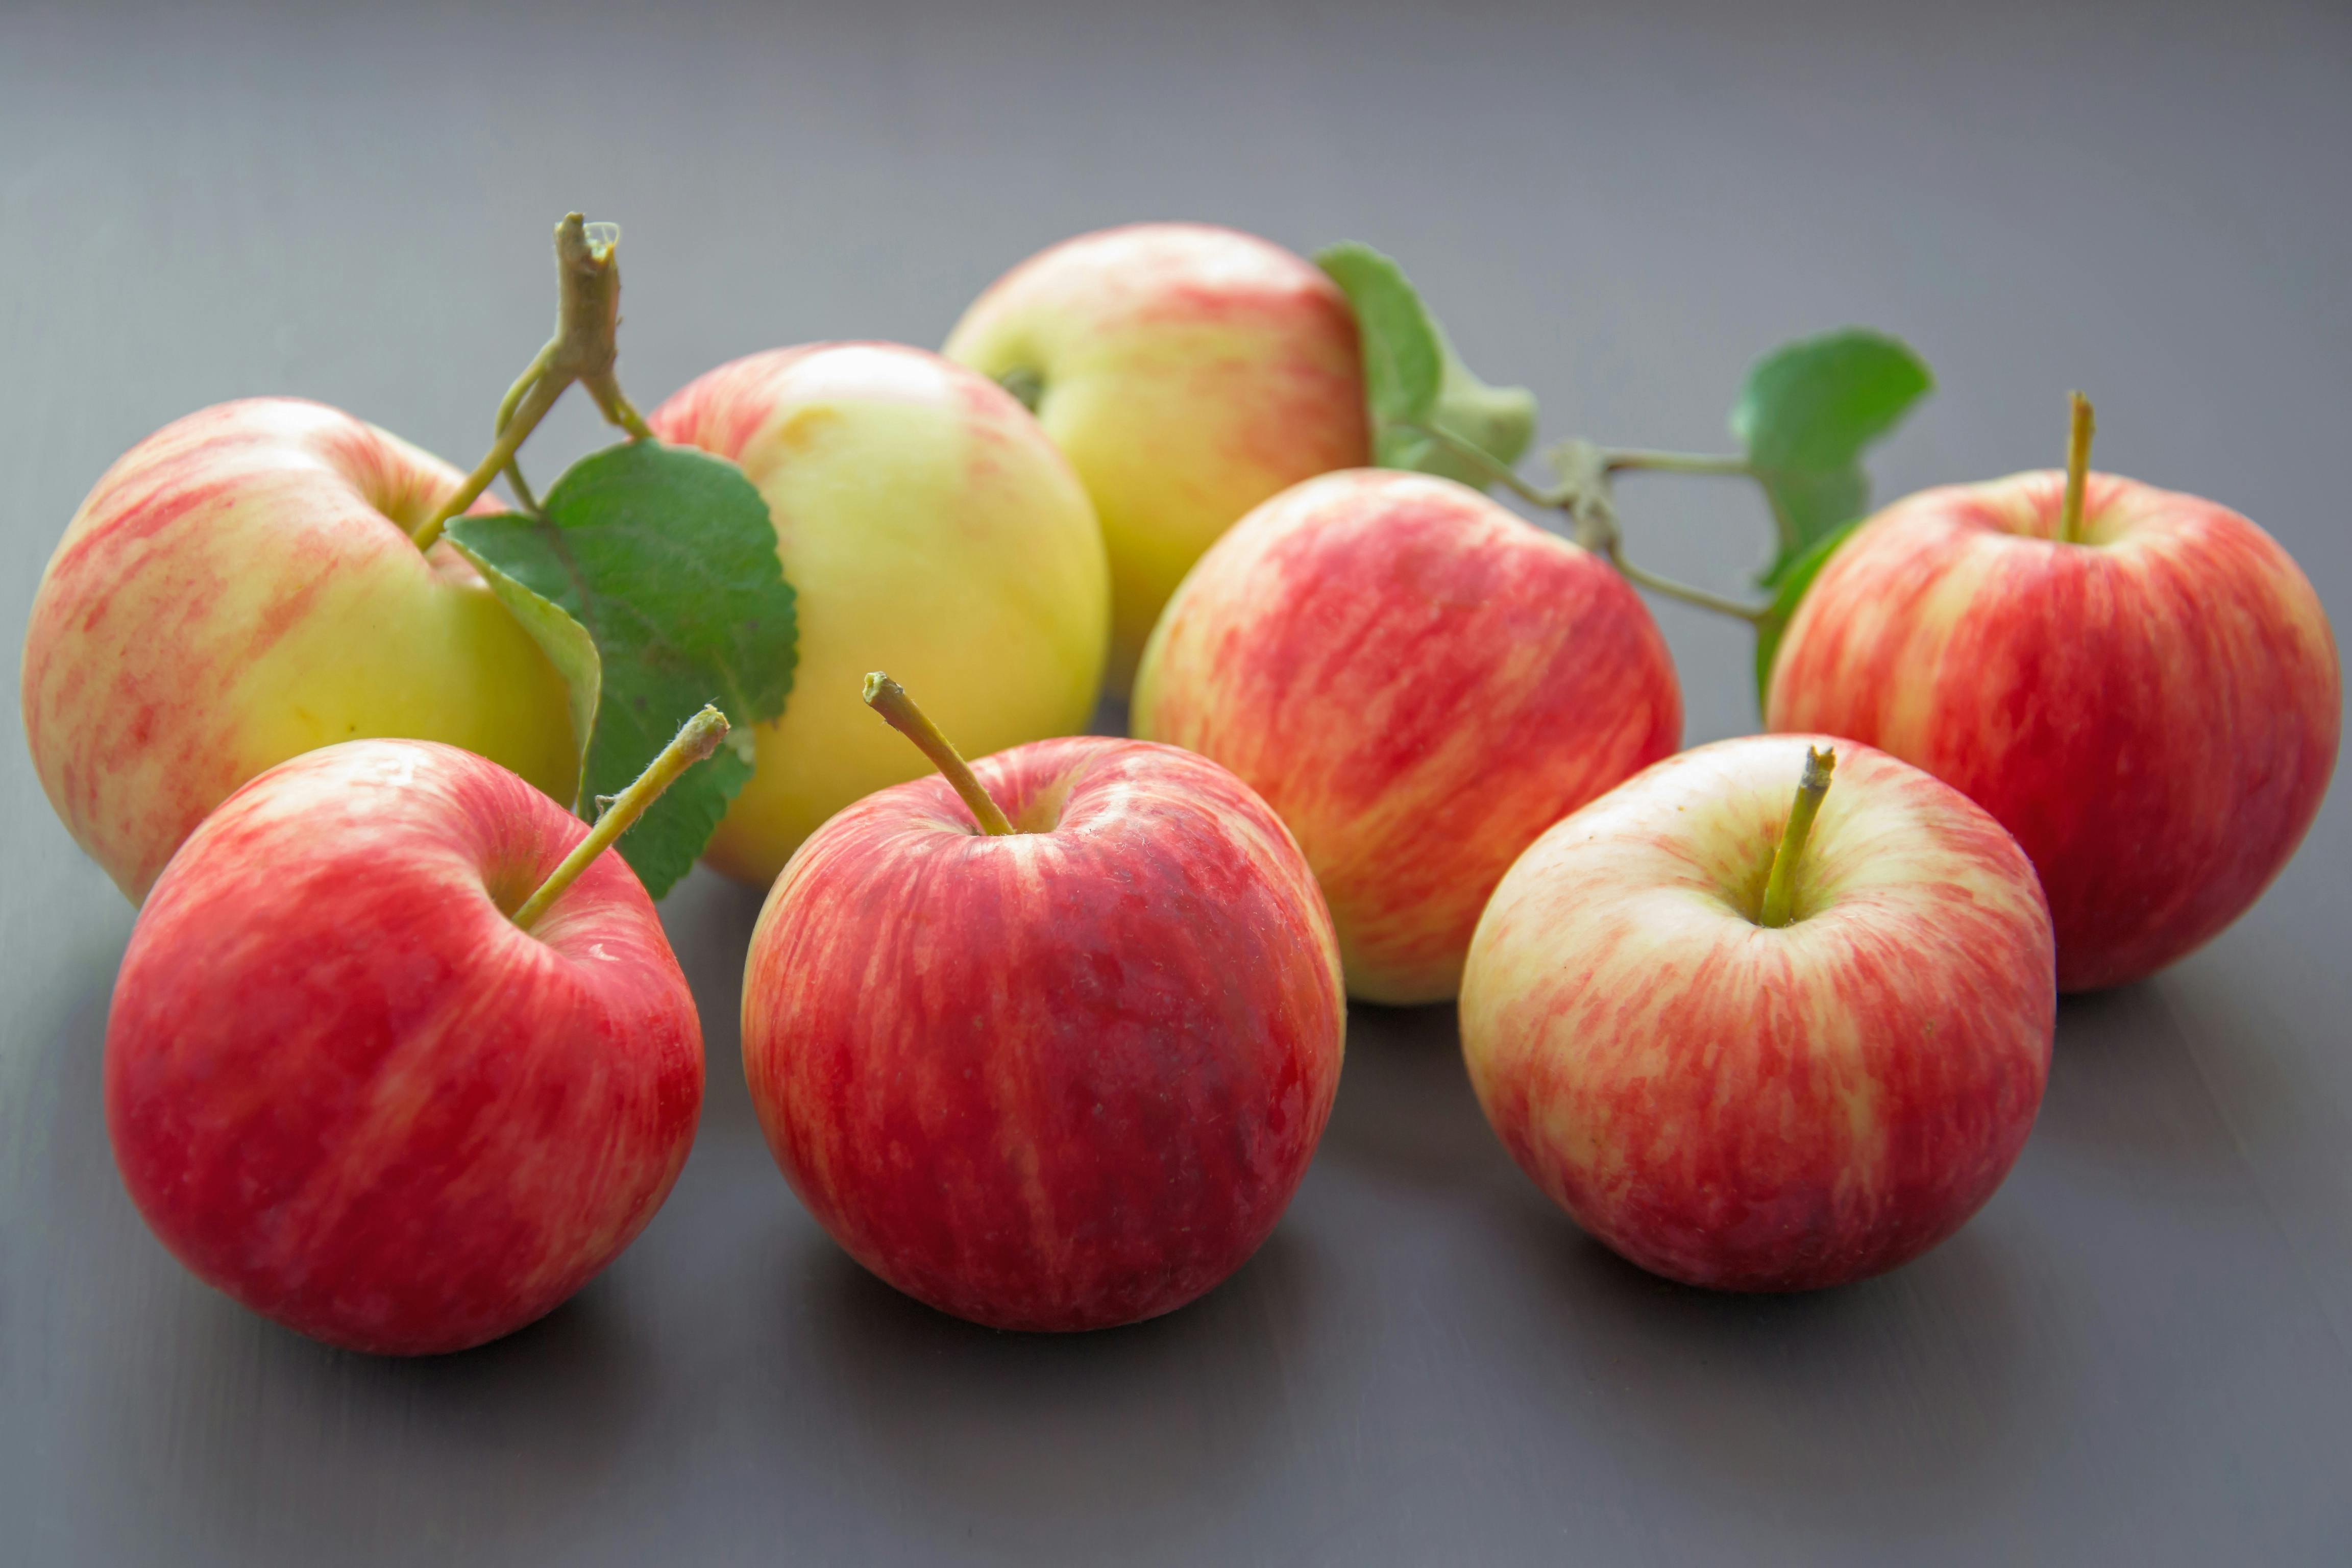 Trái cây: Những giọt mùa hạ ngọt ngào của trái cây sẵn sàng đón chào bạn. Những món trái cây tươi ngon, giàu dinh dưỡng sẽ mang đến cho bạn một trải nghiệm đầy sức sống và khoẻ mạnh.